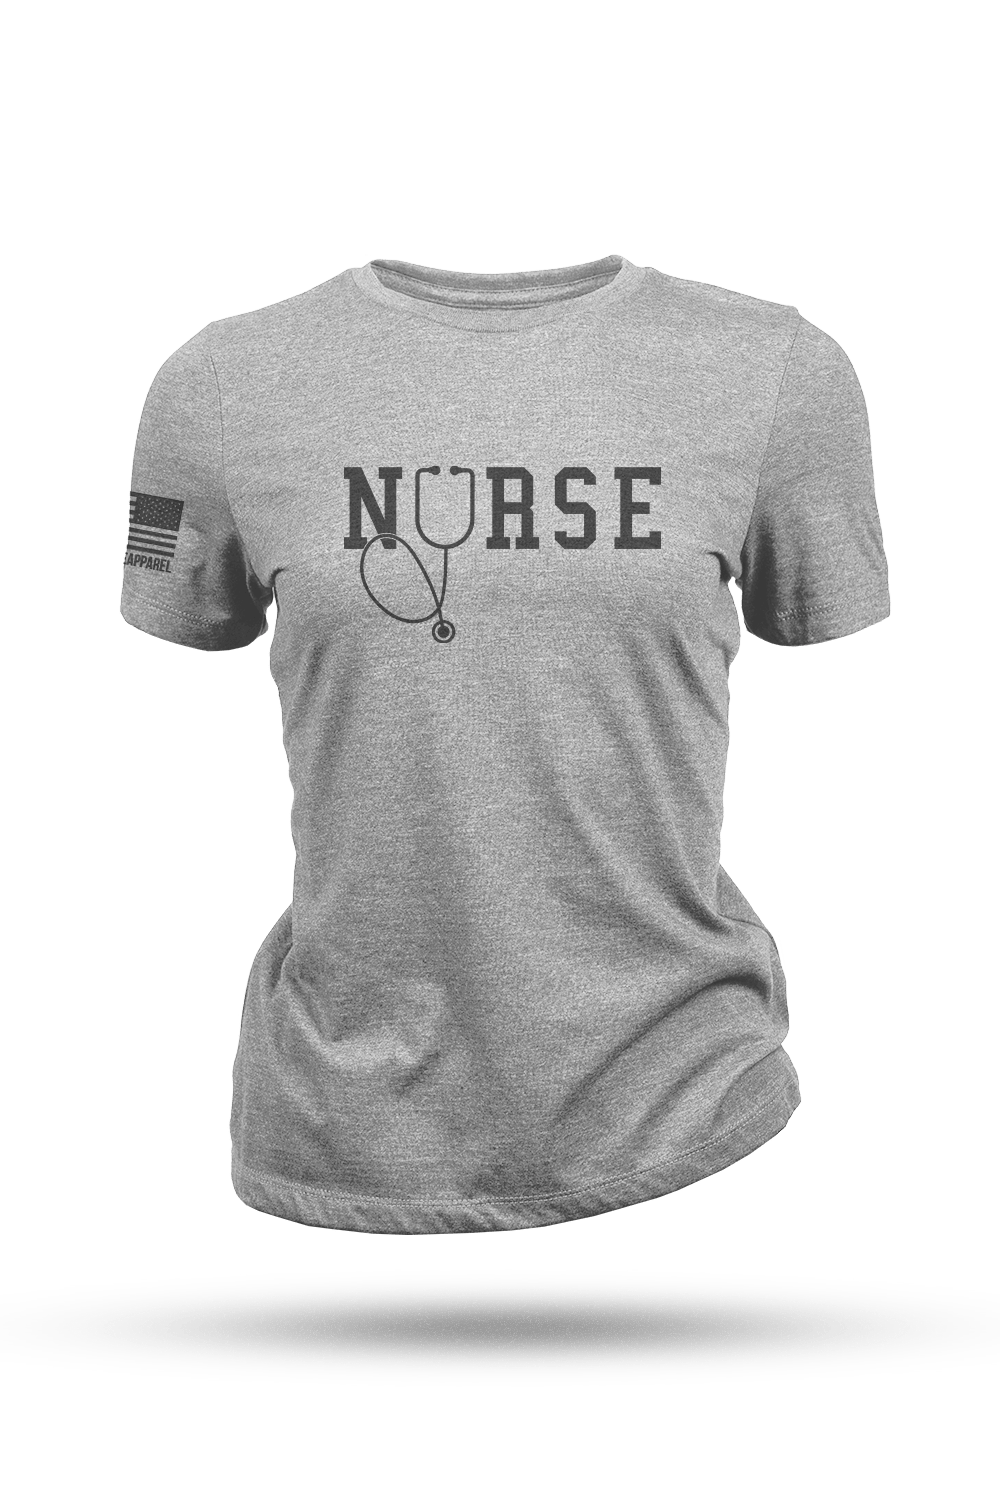 Women's T-Shirt - Nurse